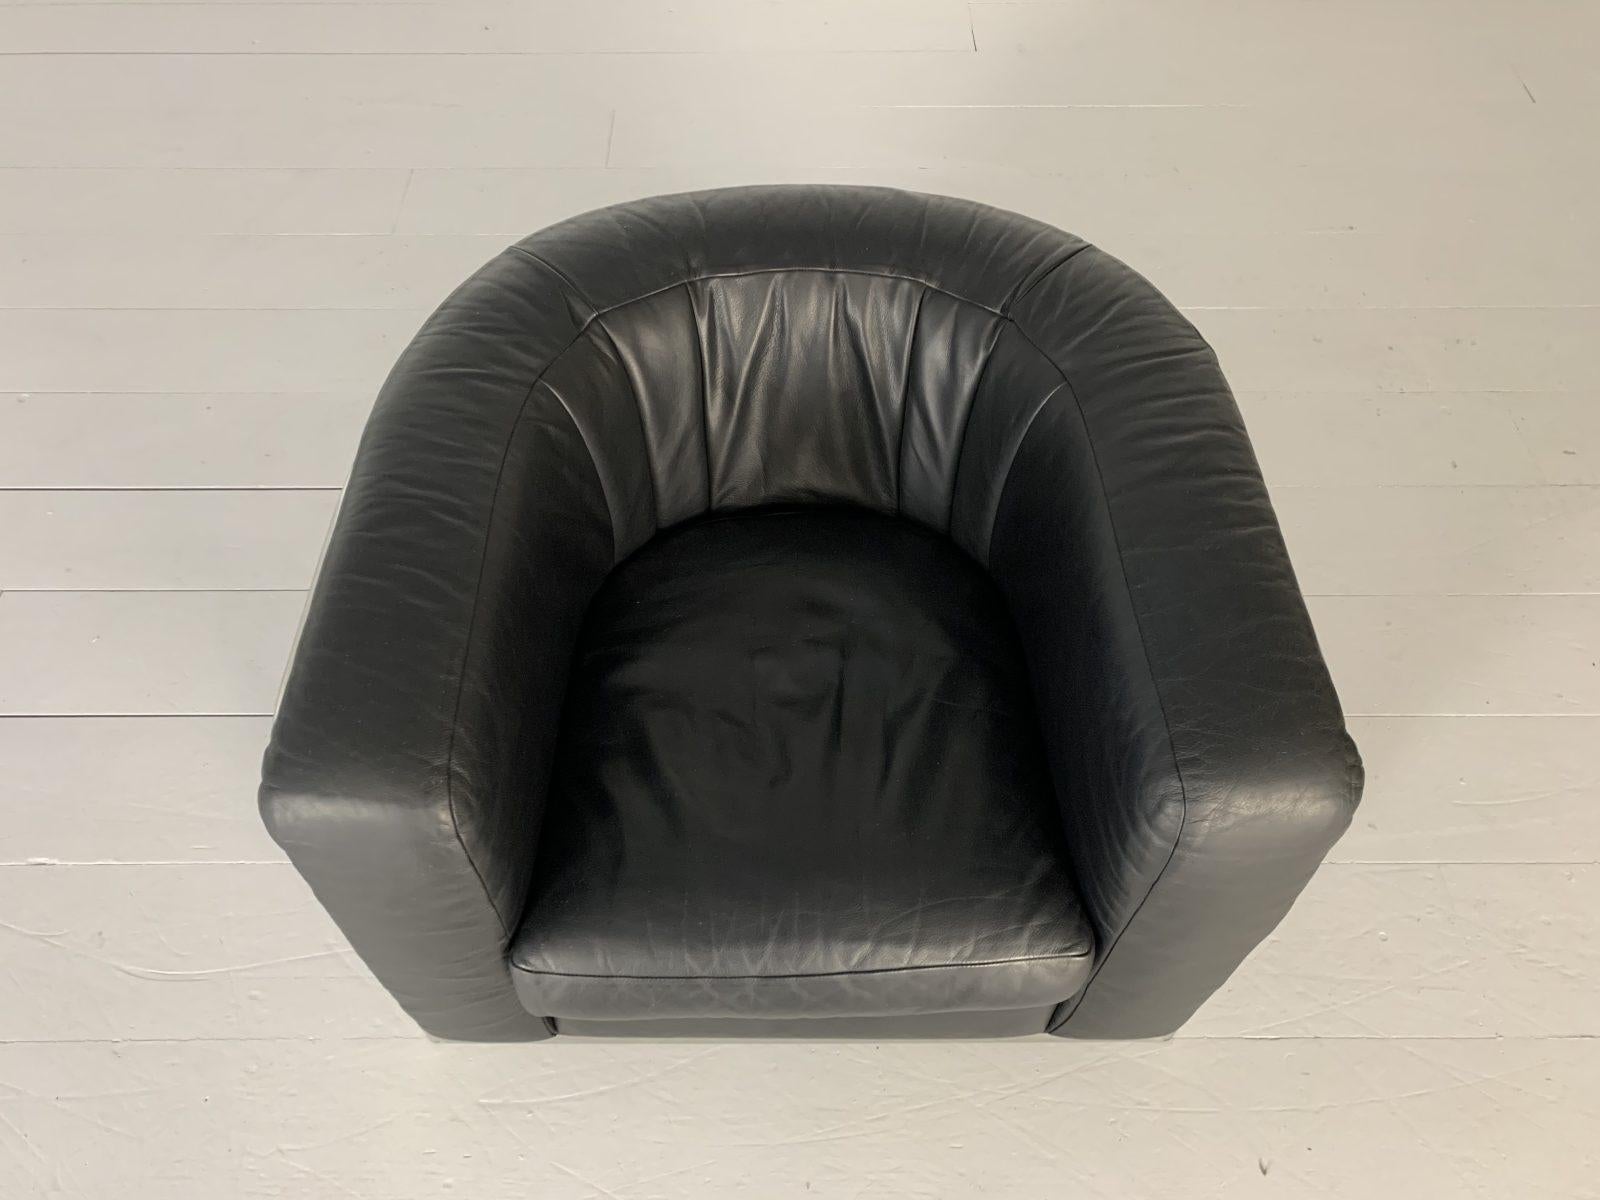 Contemporary Zanotta “Onda” Armchair, in Black “Scozia” Leather and Chrome